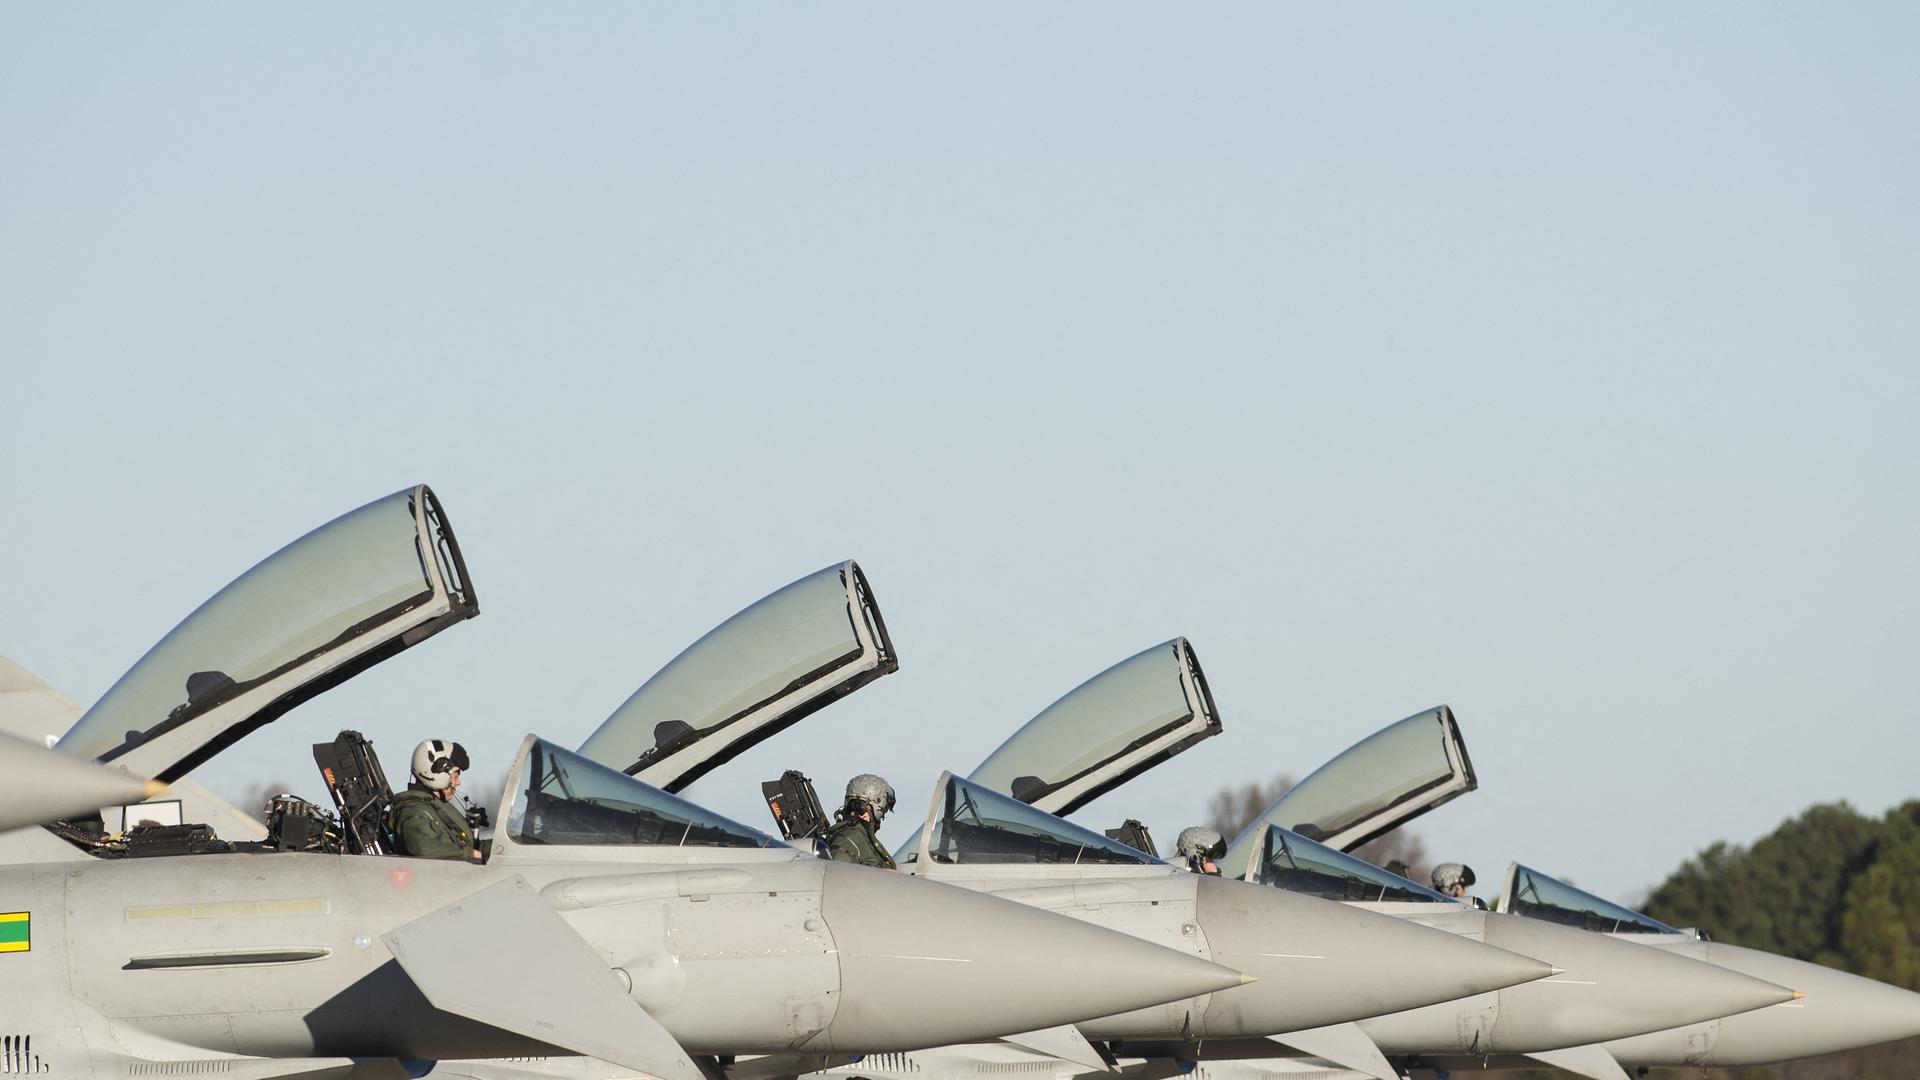 Mehrere Eurofighter-Kampfflugzeuge der britischen Armee stehen nebeneinander. Die Cockpits der Flugzeuge sind geöffnet. Die Piloten sitzen in ihren Maschinen.